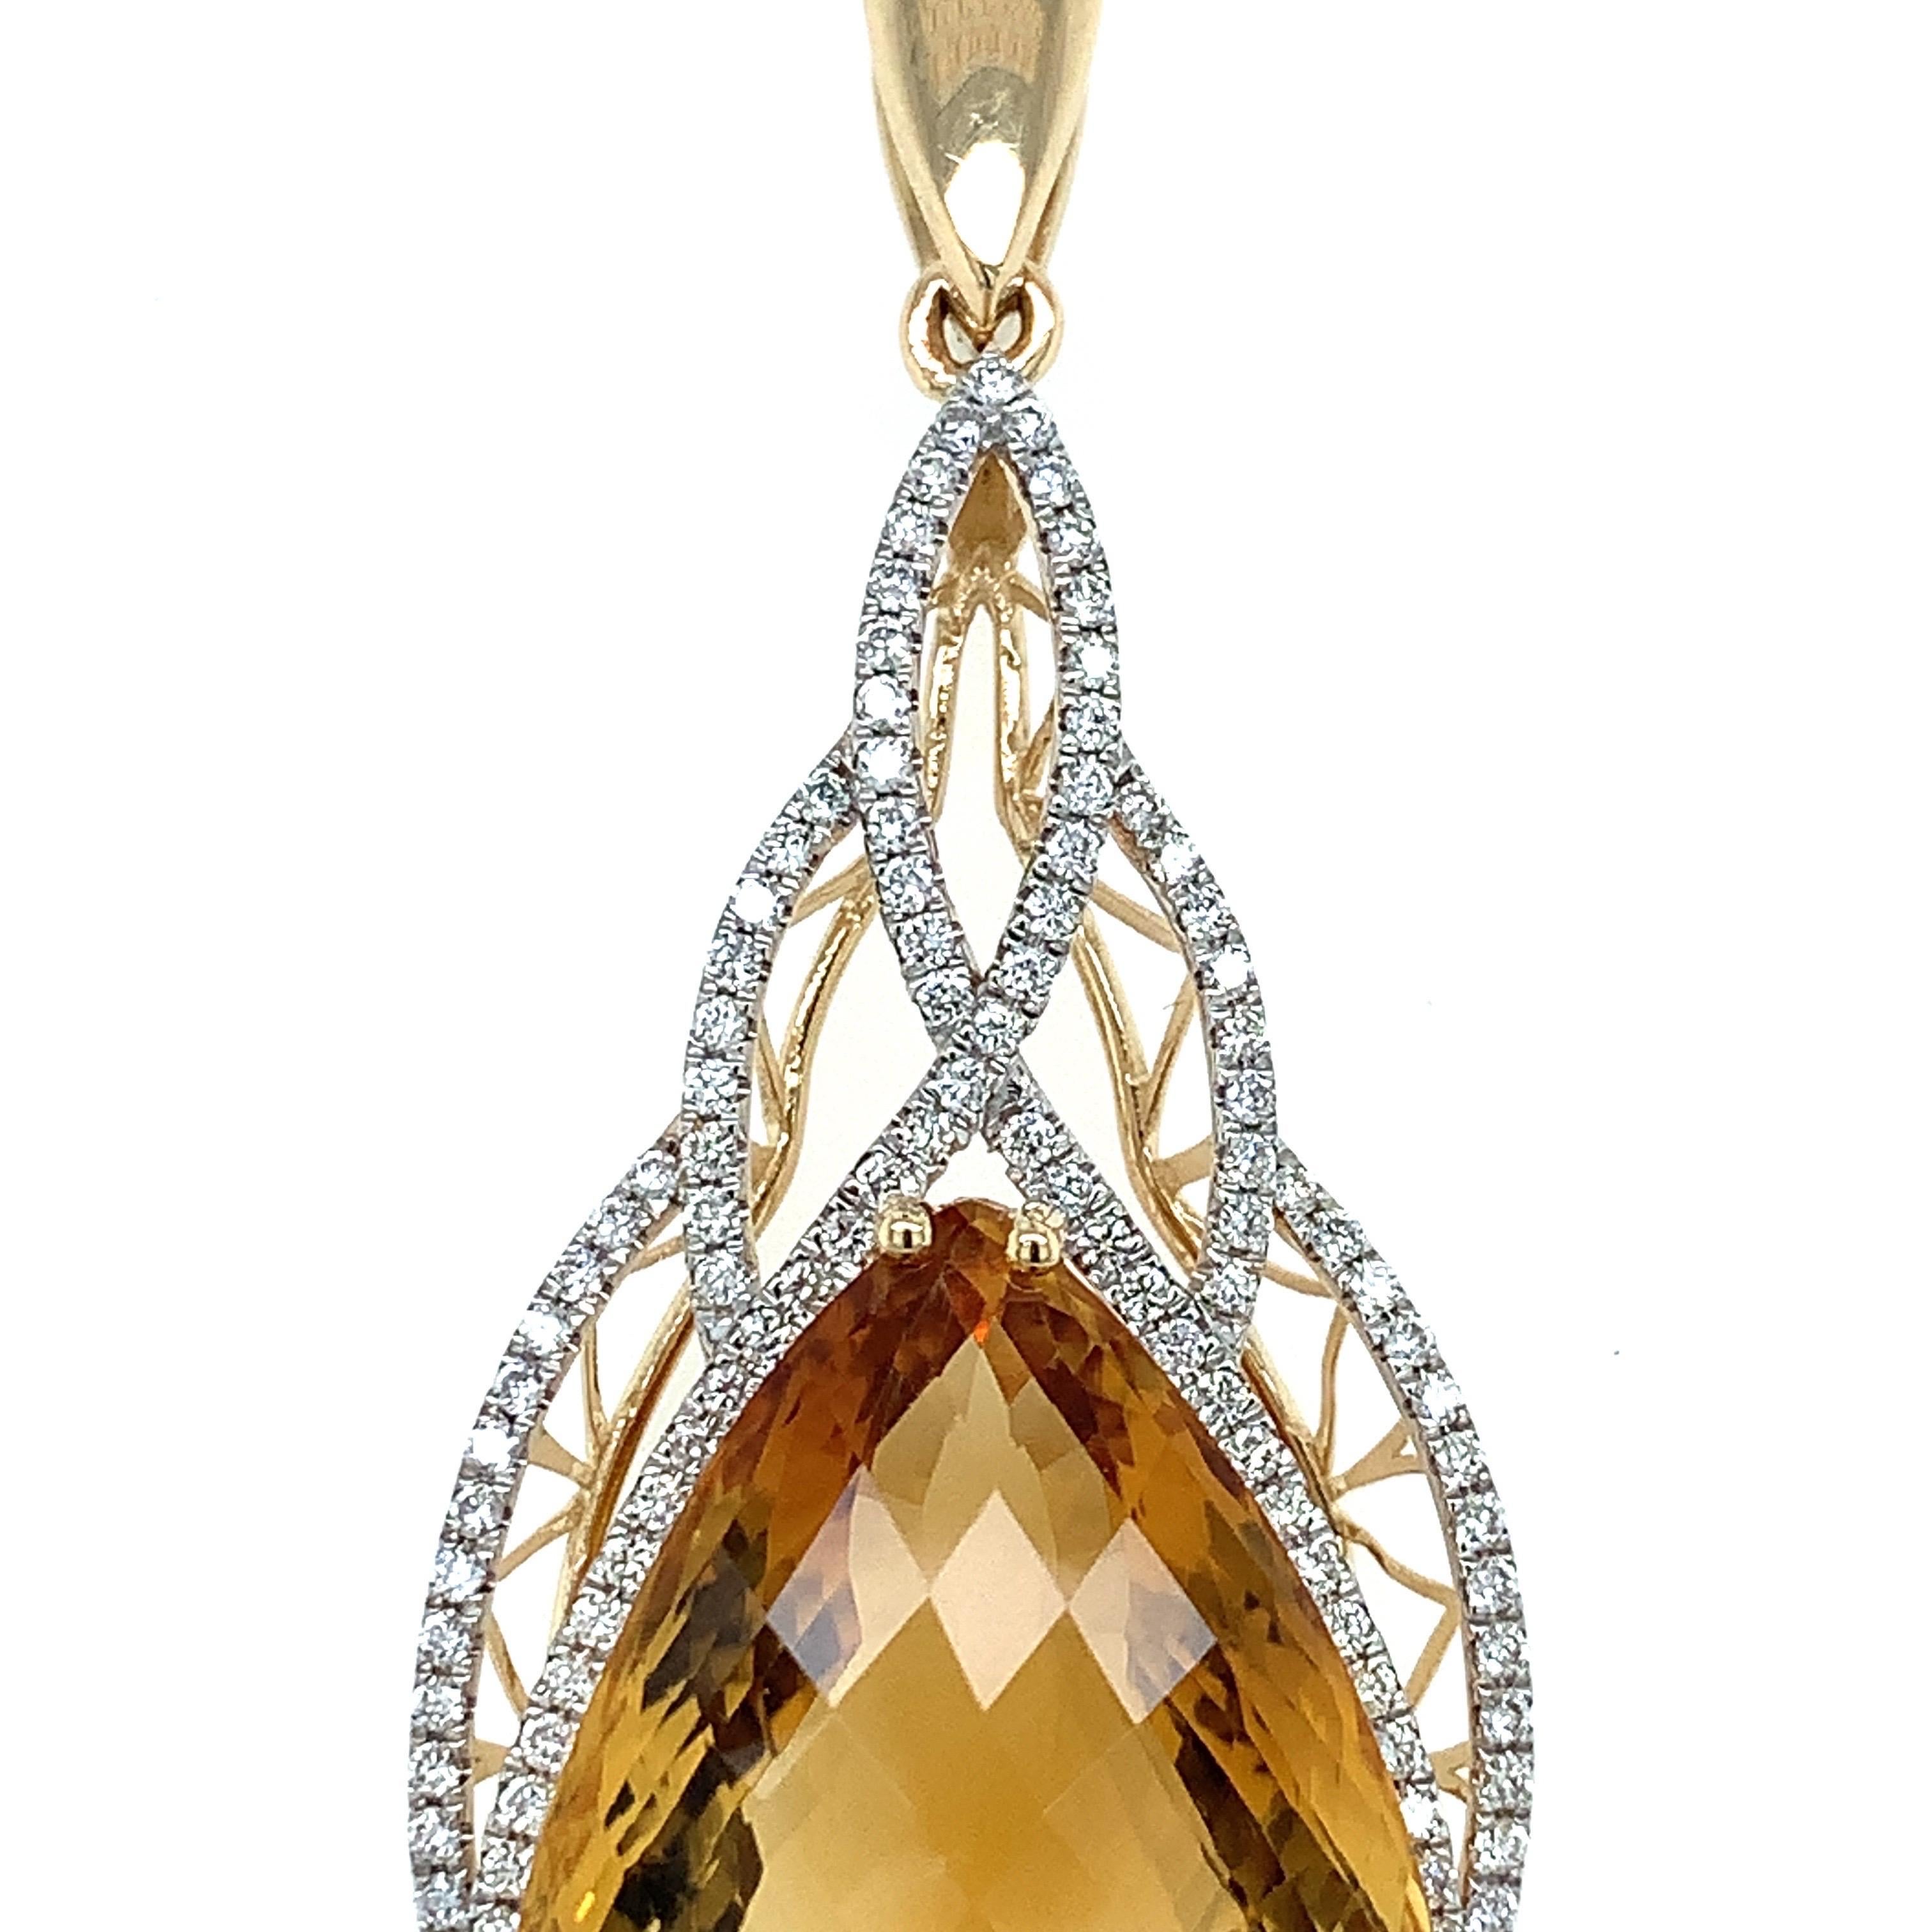 .25 carat diamond necklace